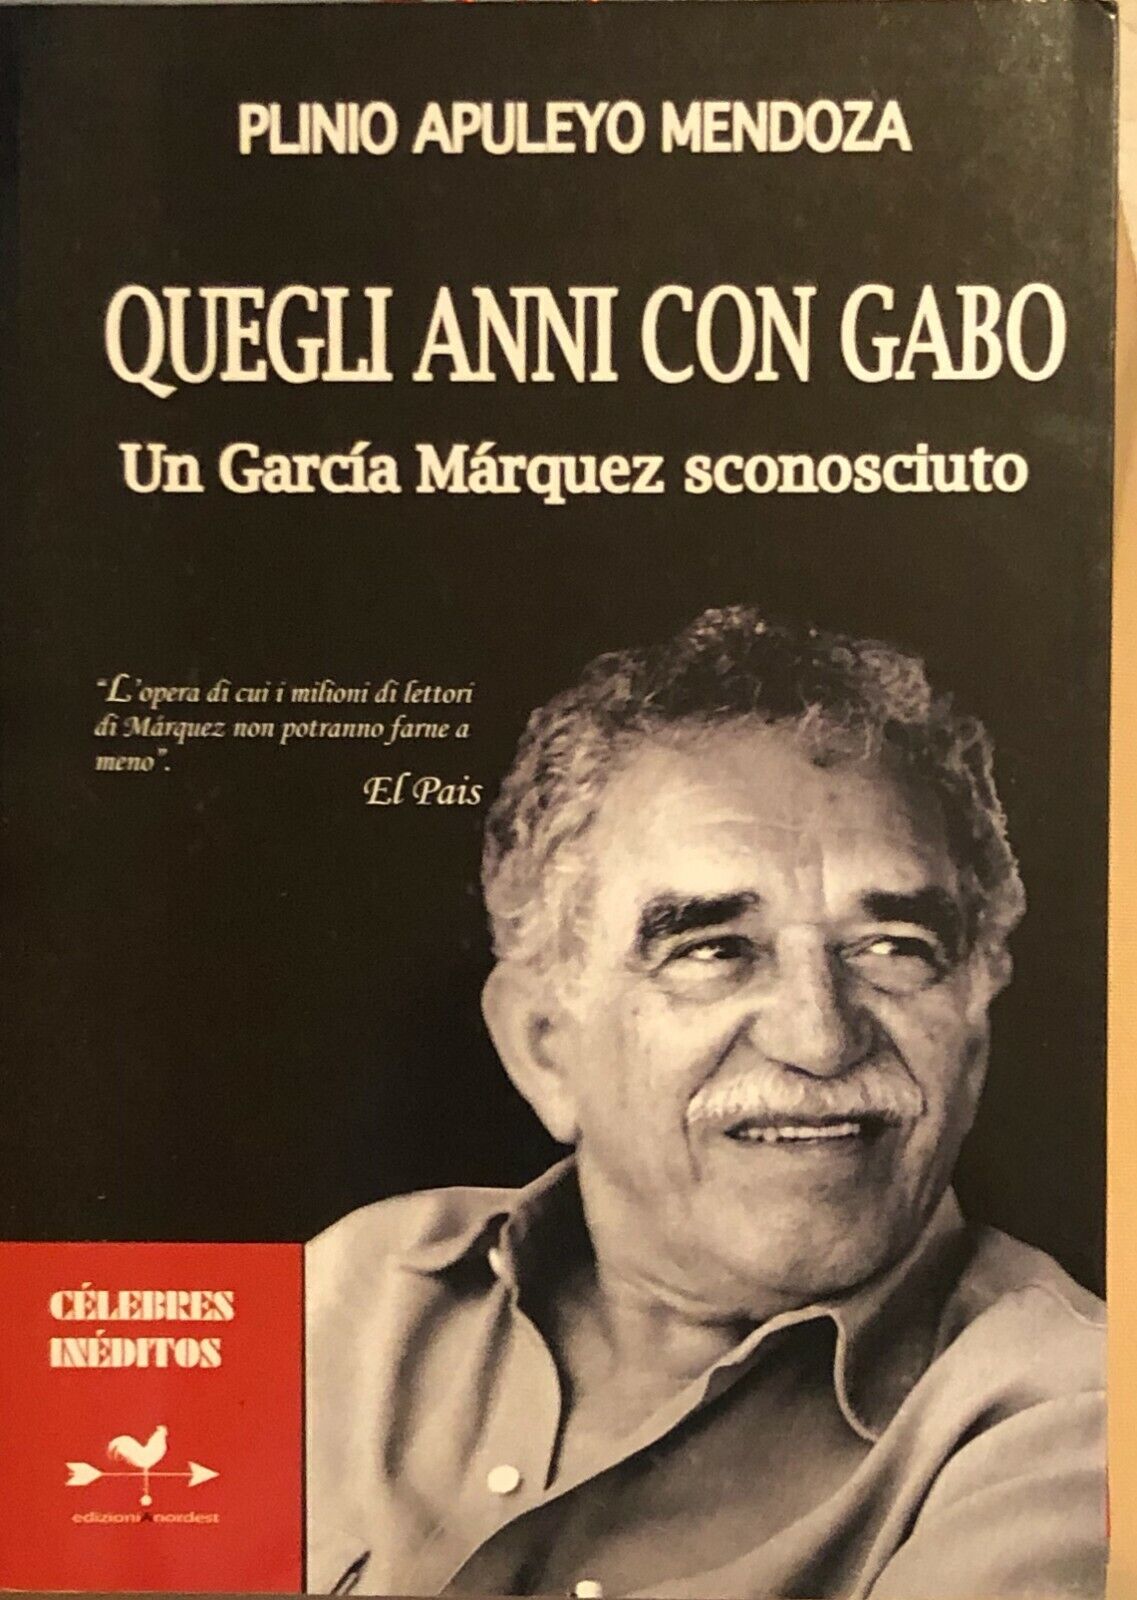 Quegli anni con Gabo. Un Garc?a M?rquez sconosciuto di Plinio Apulejo Mendoza, 2 libro usato